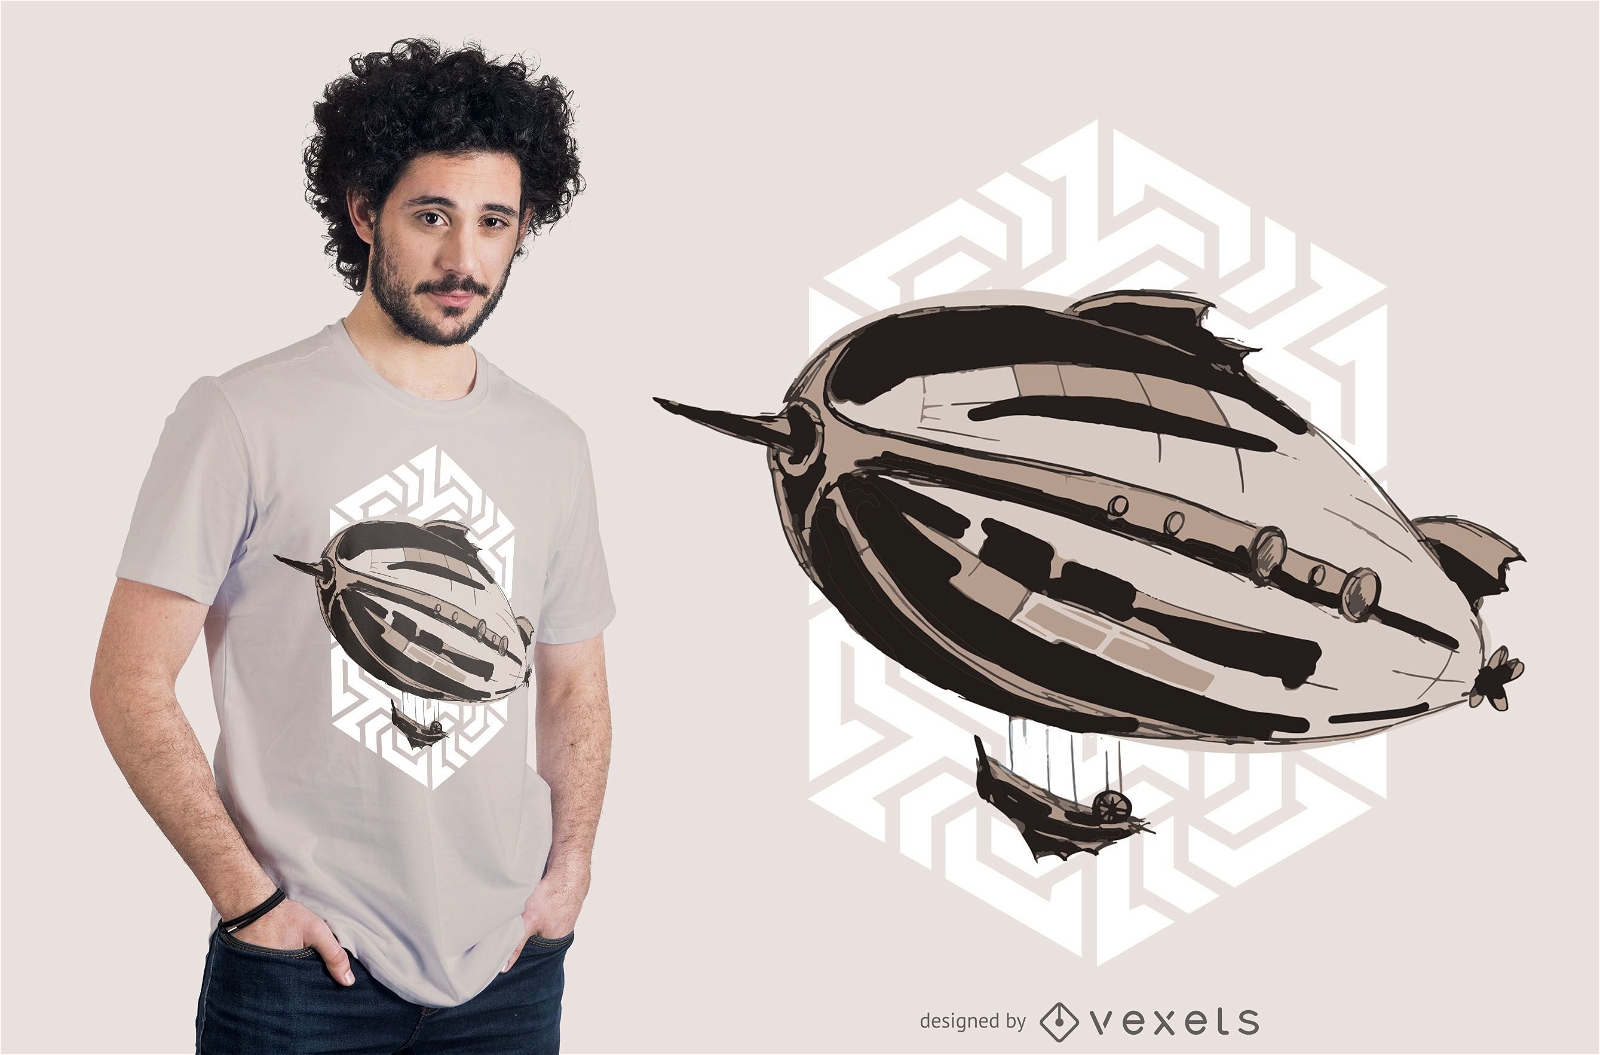 Steampunk airship t-shirt design